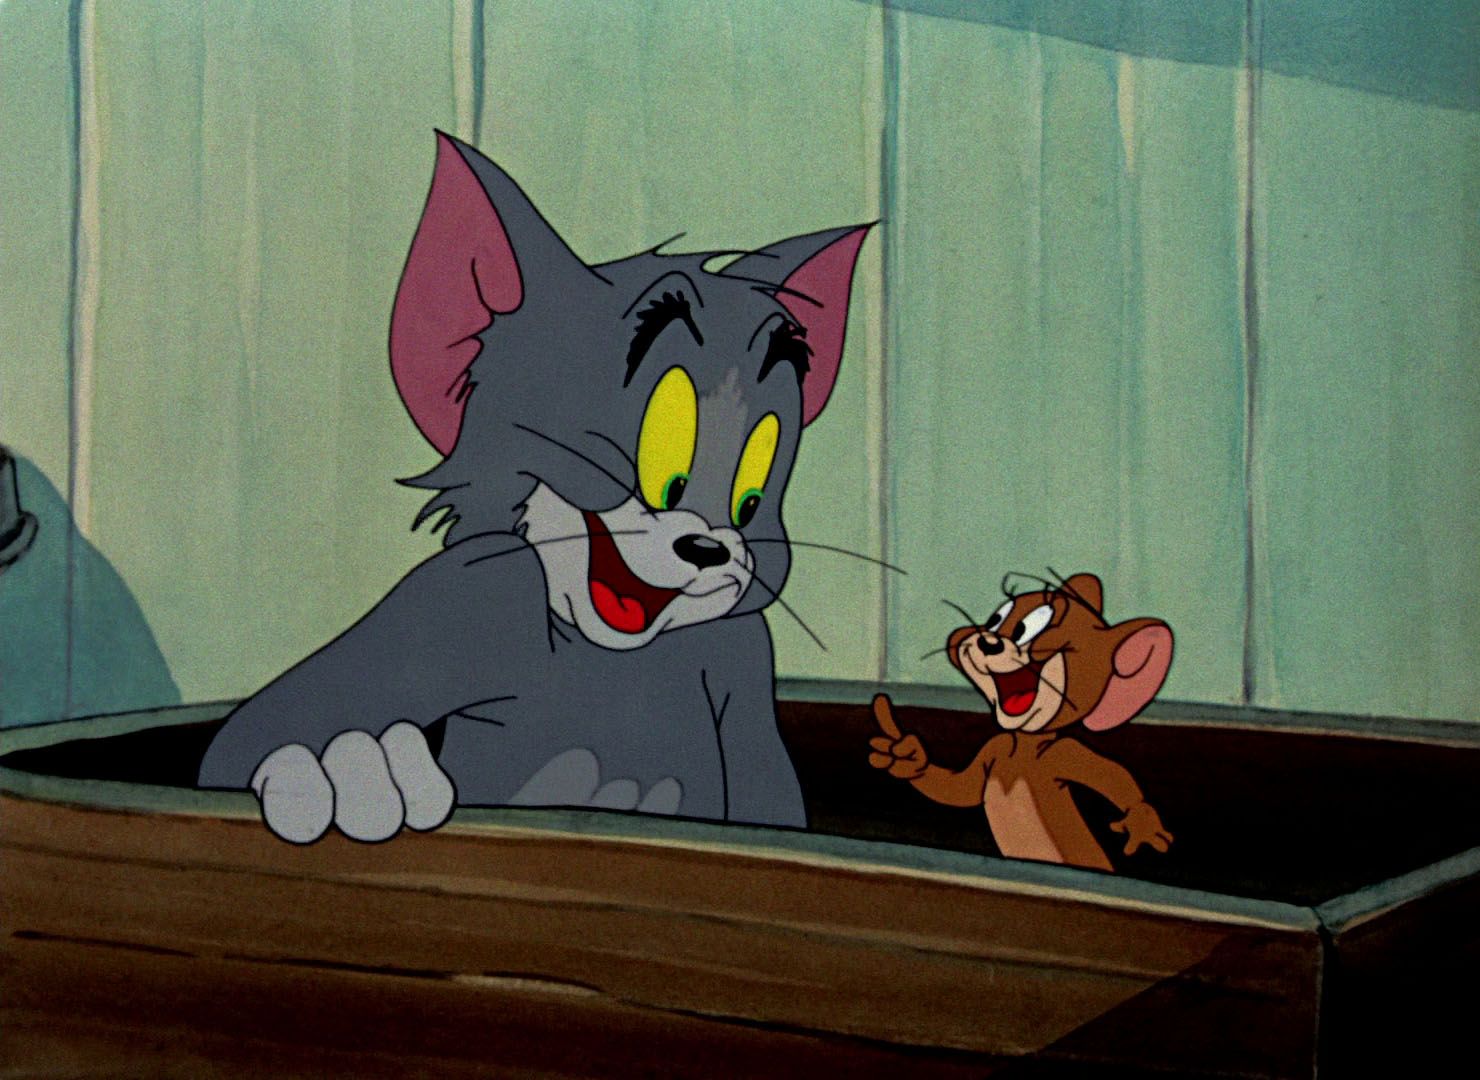 Том и джерри живут. Том и Джерри 1960. Том и Джерри (Tom and Jerry) 1940. Том и Джерри 1996.